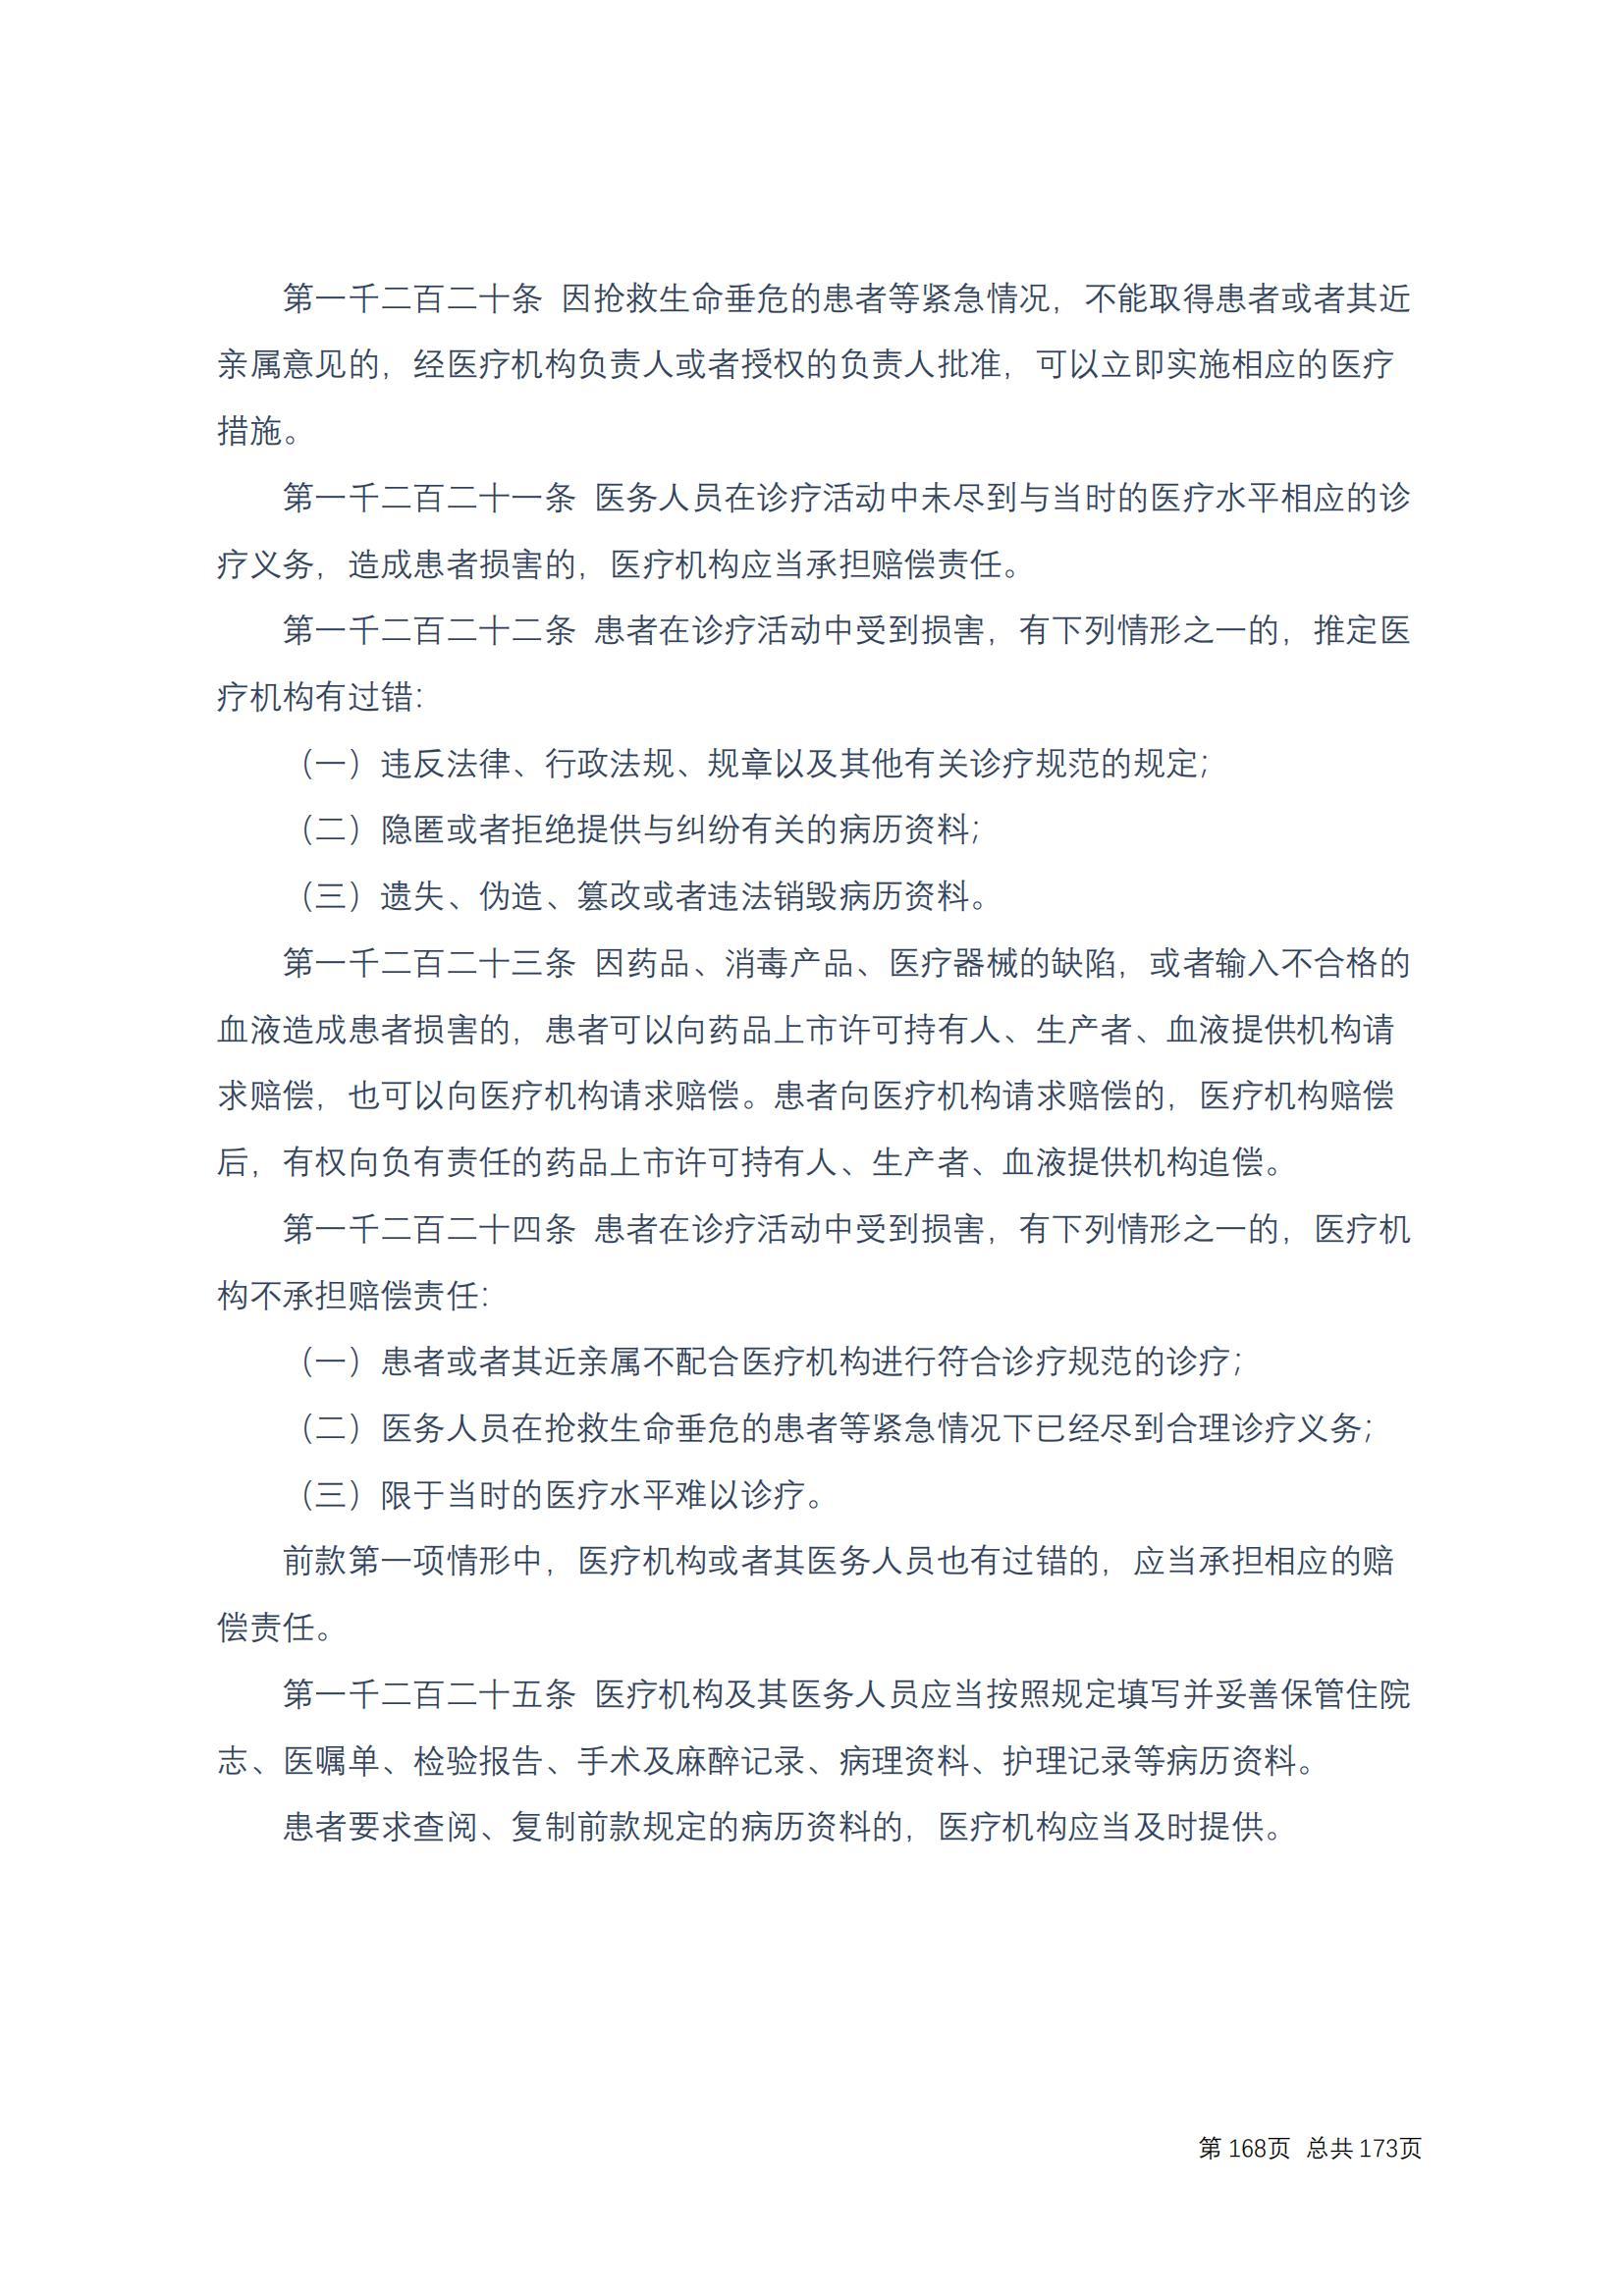 中华人民共和国民法典 修改过_167